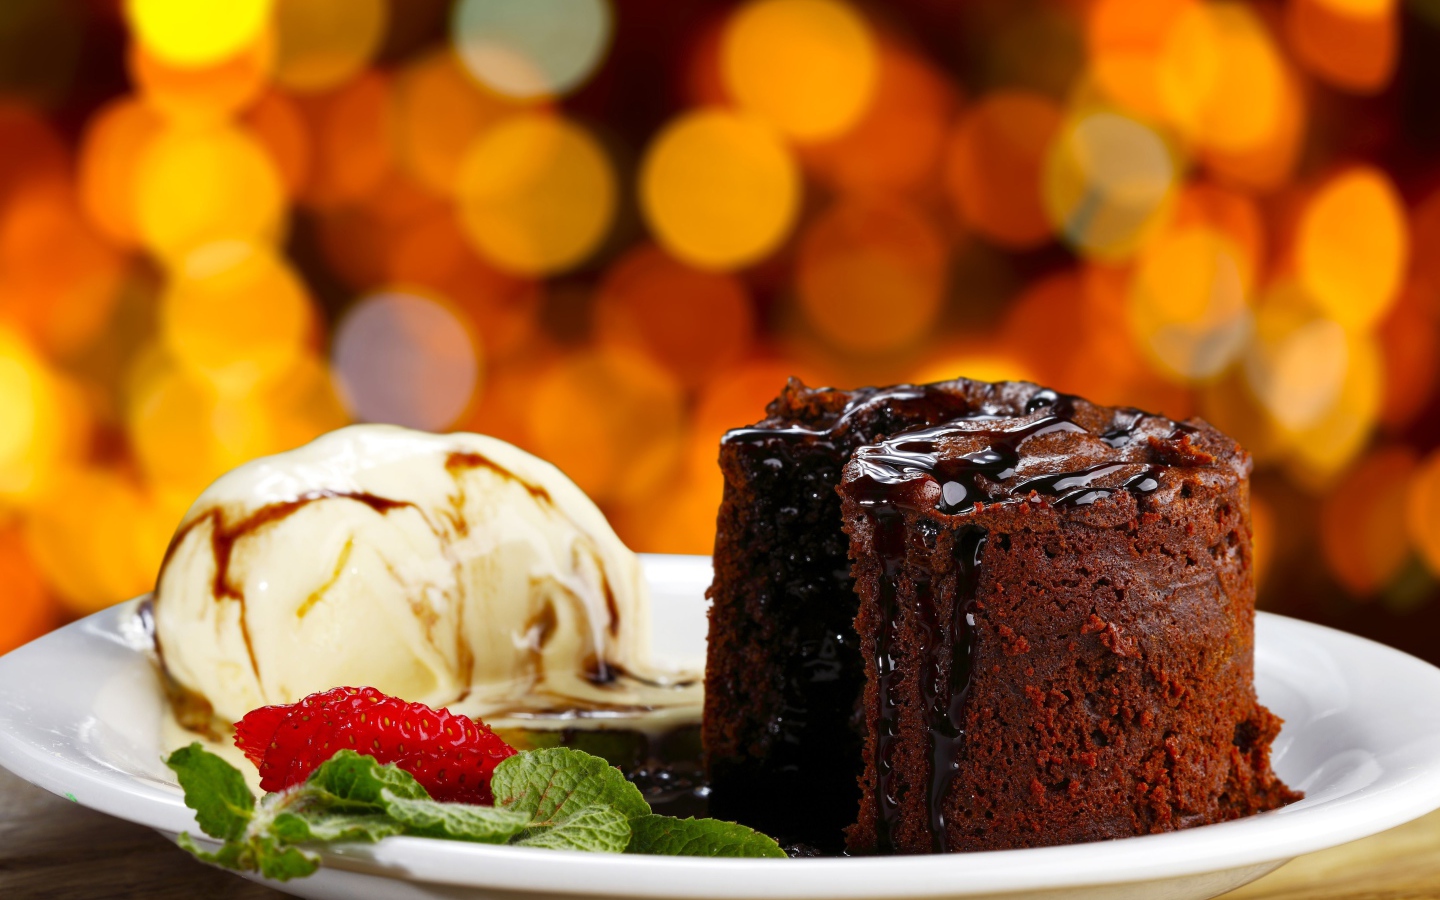 Шоколадное пирожное с мороженым и клубникой на тарелке